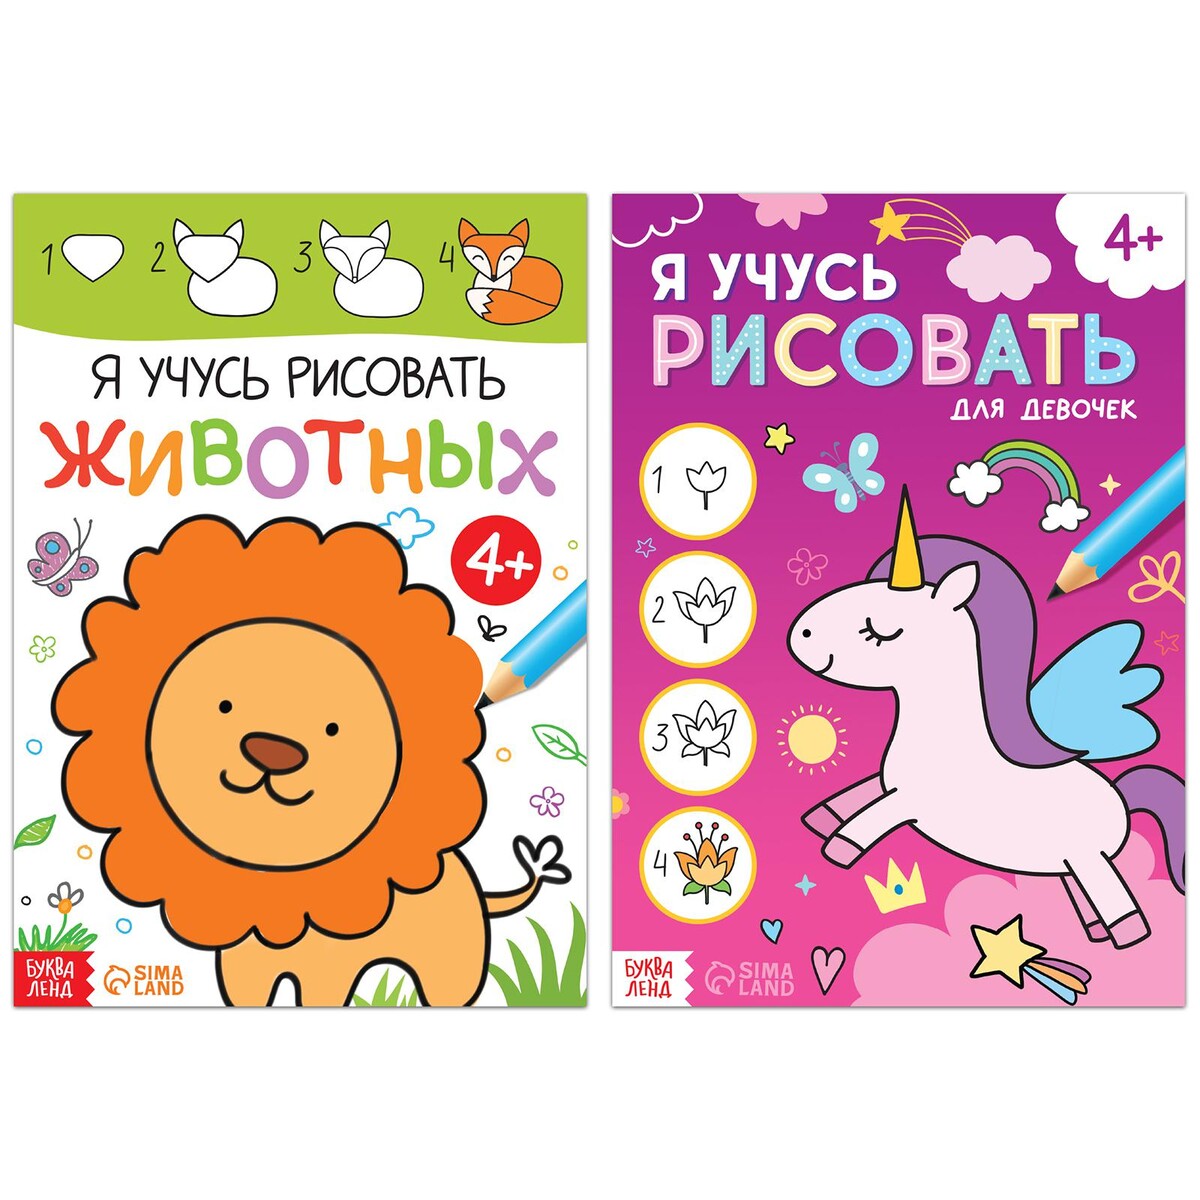 Набор книг для девочек домашняя школа учимся играя комплект из 2 книг 2 набора карточек